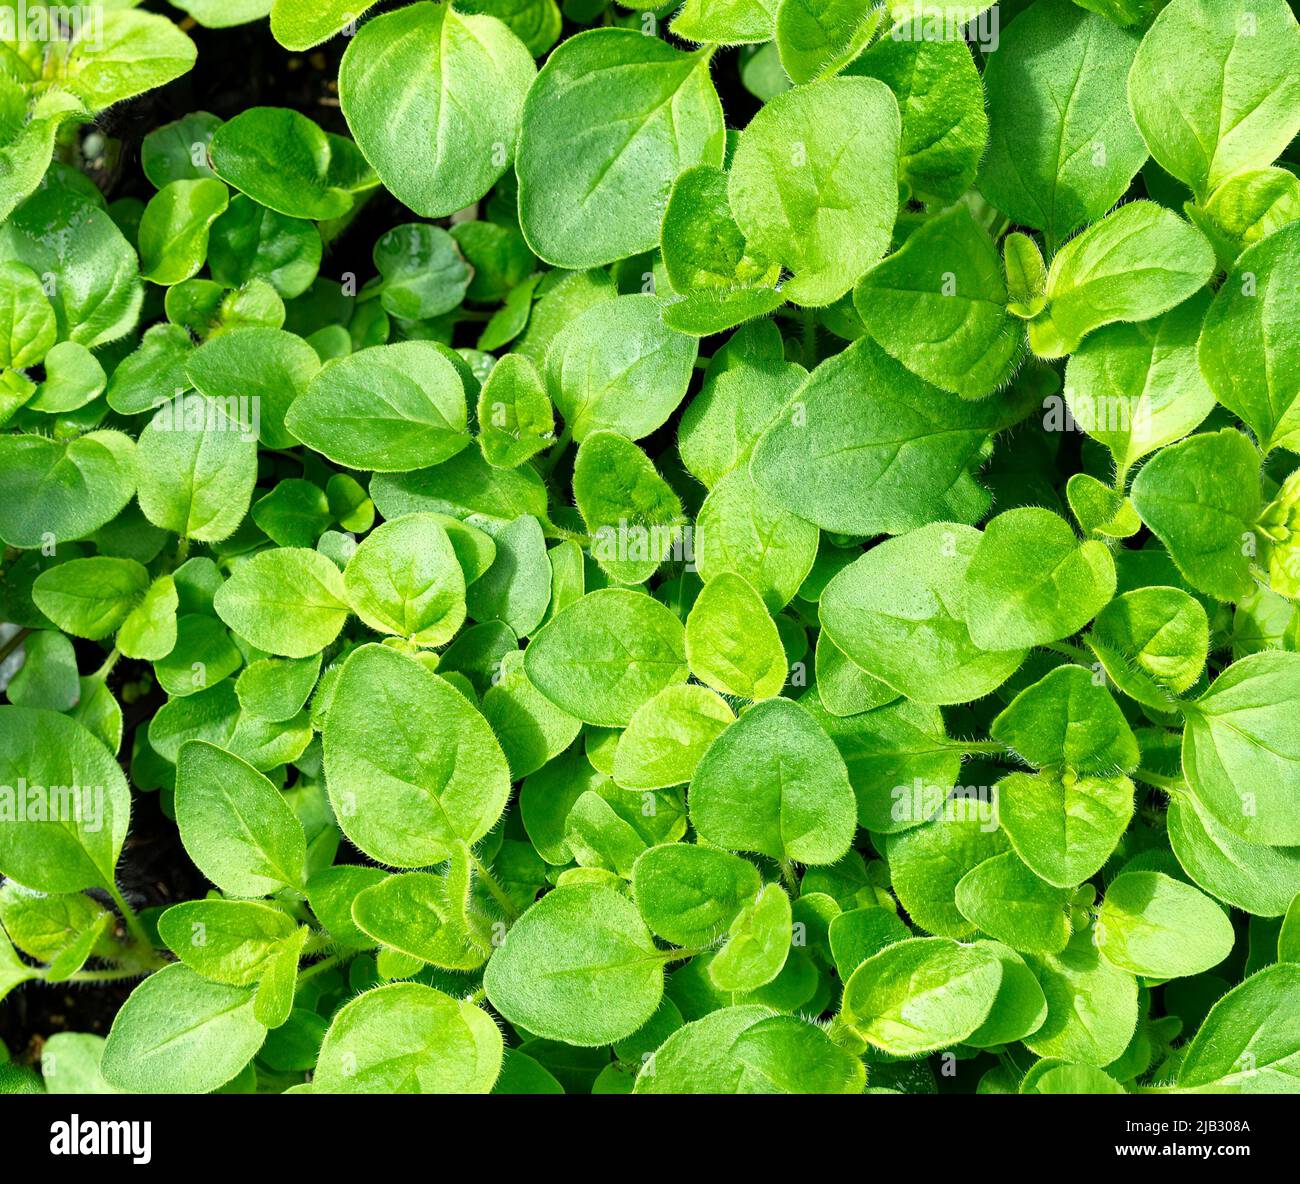 Hierba de orégano fresca en fondo relleno del marco Foto de stock